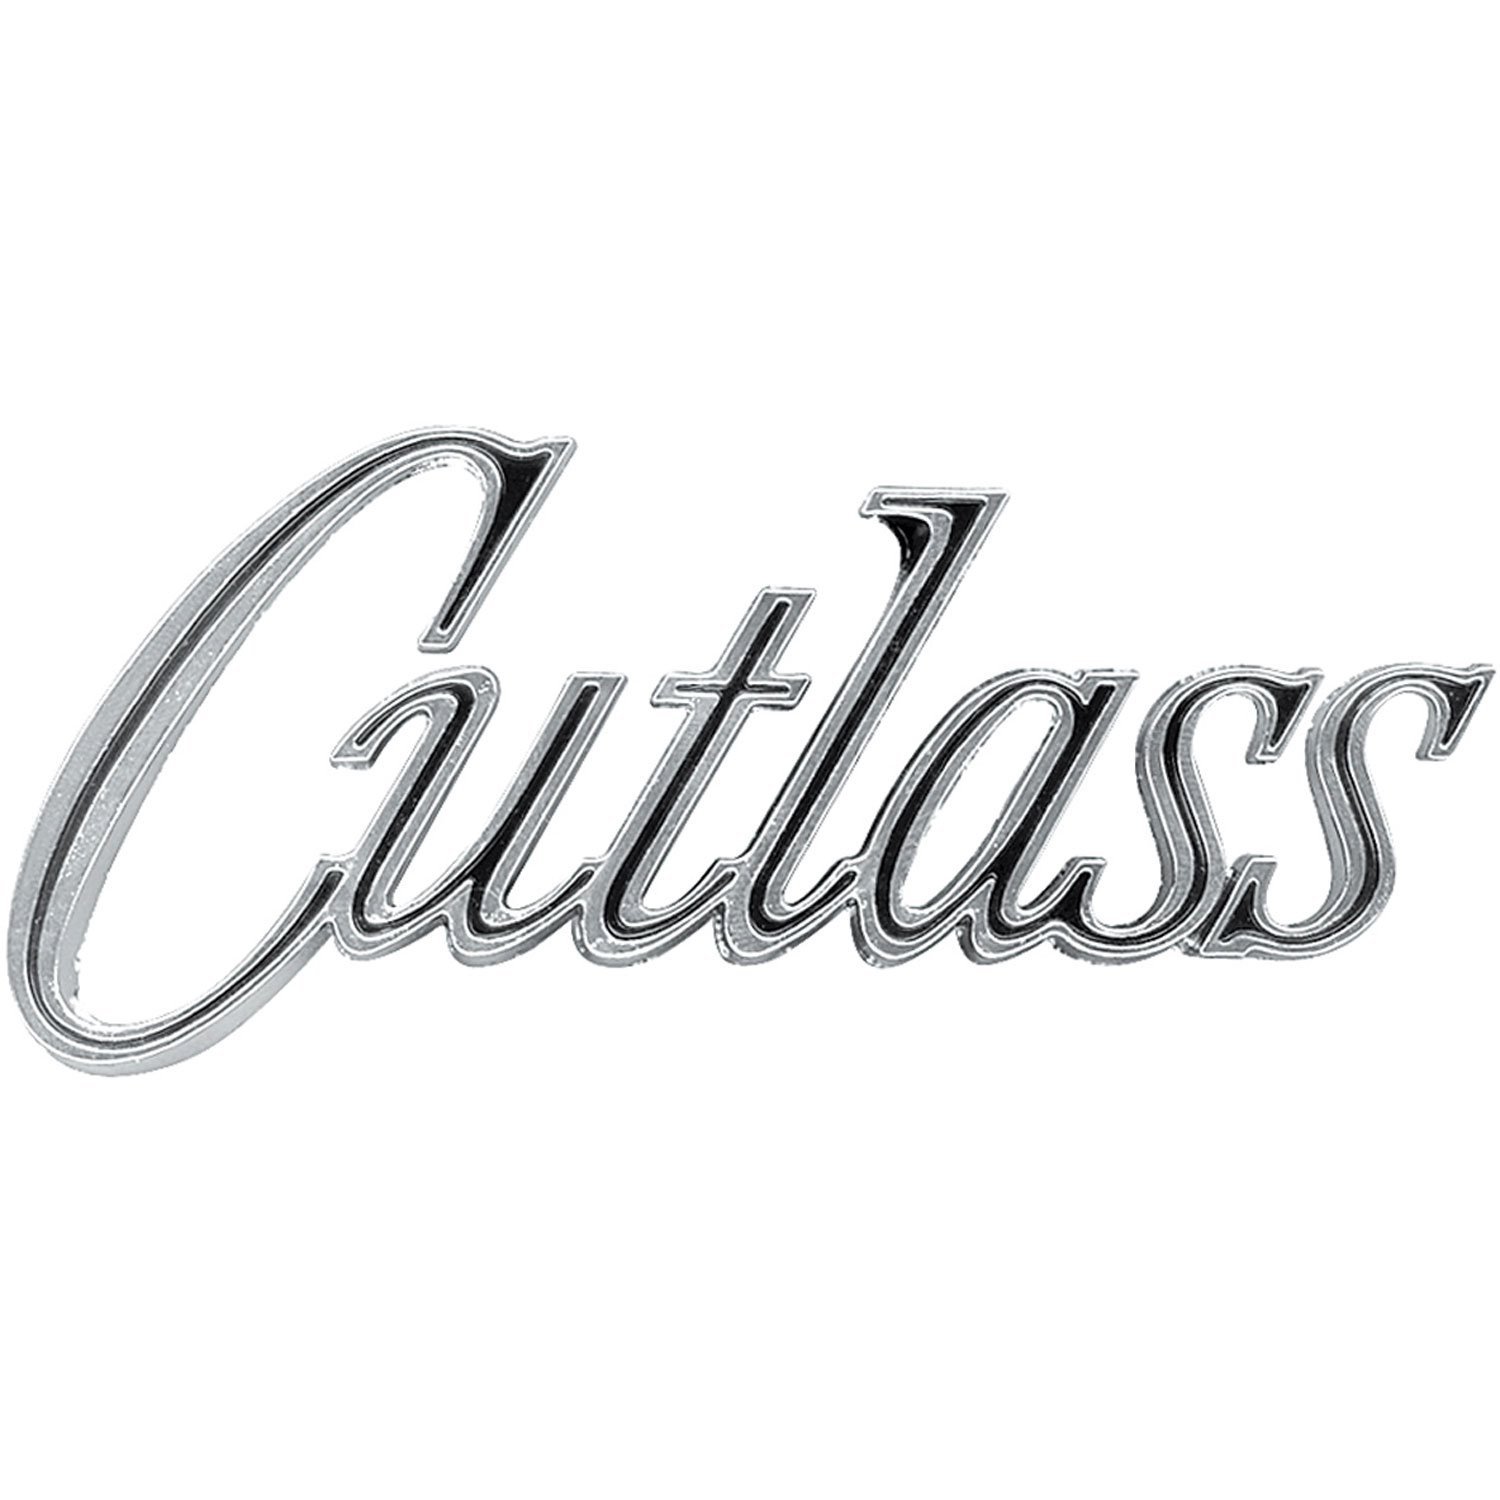 Emblem Fender 1970 Cutlass/Supreme